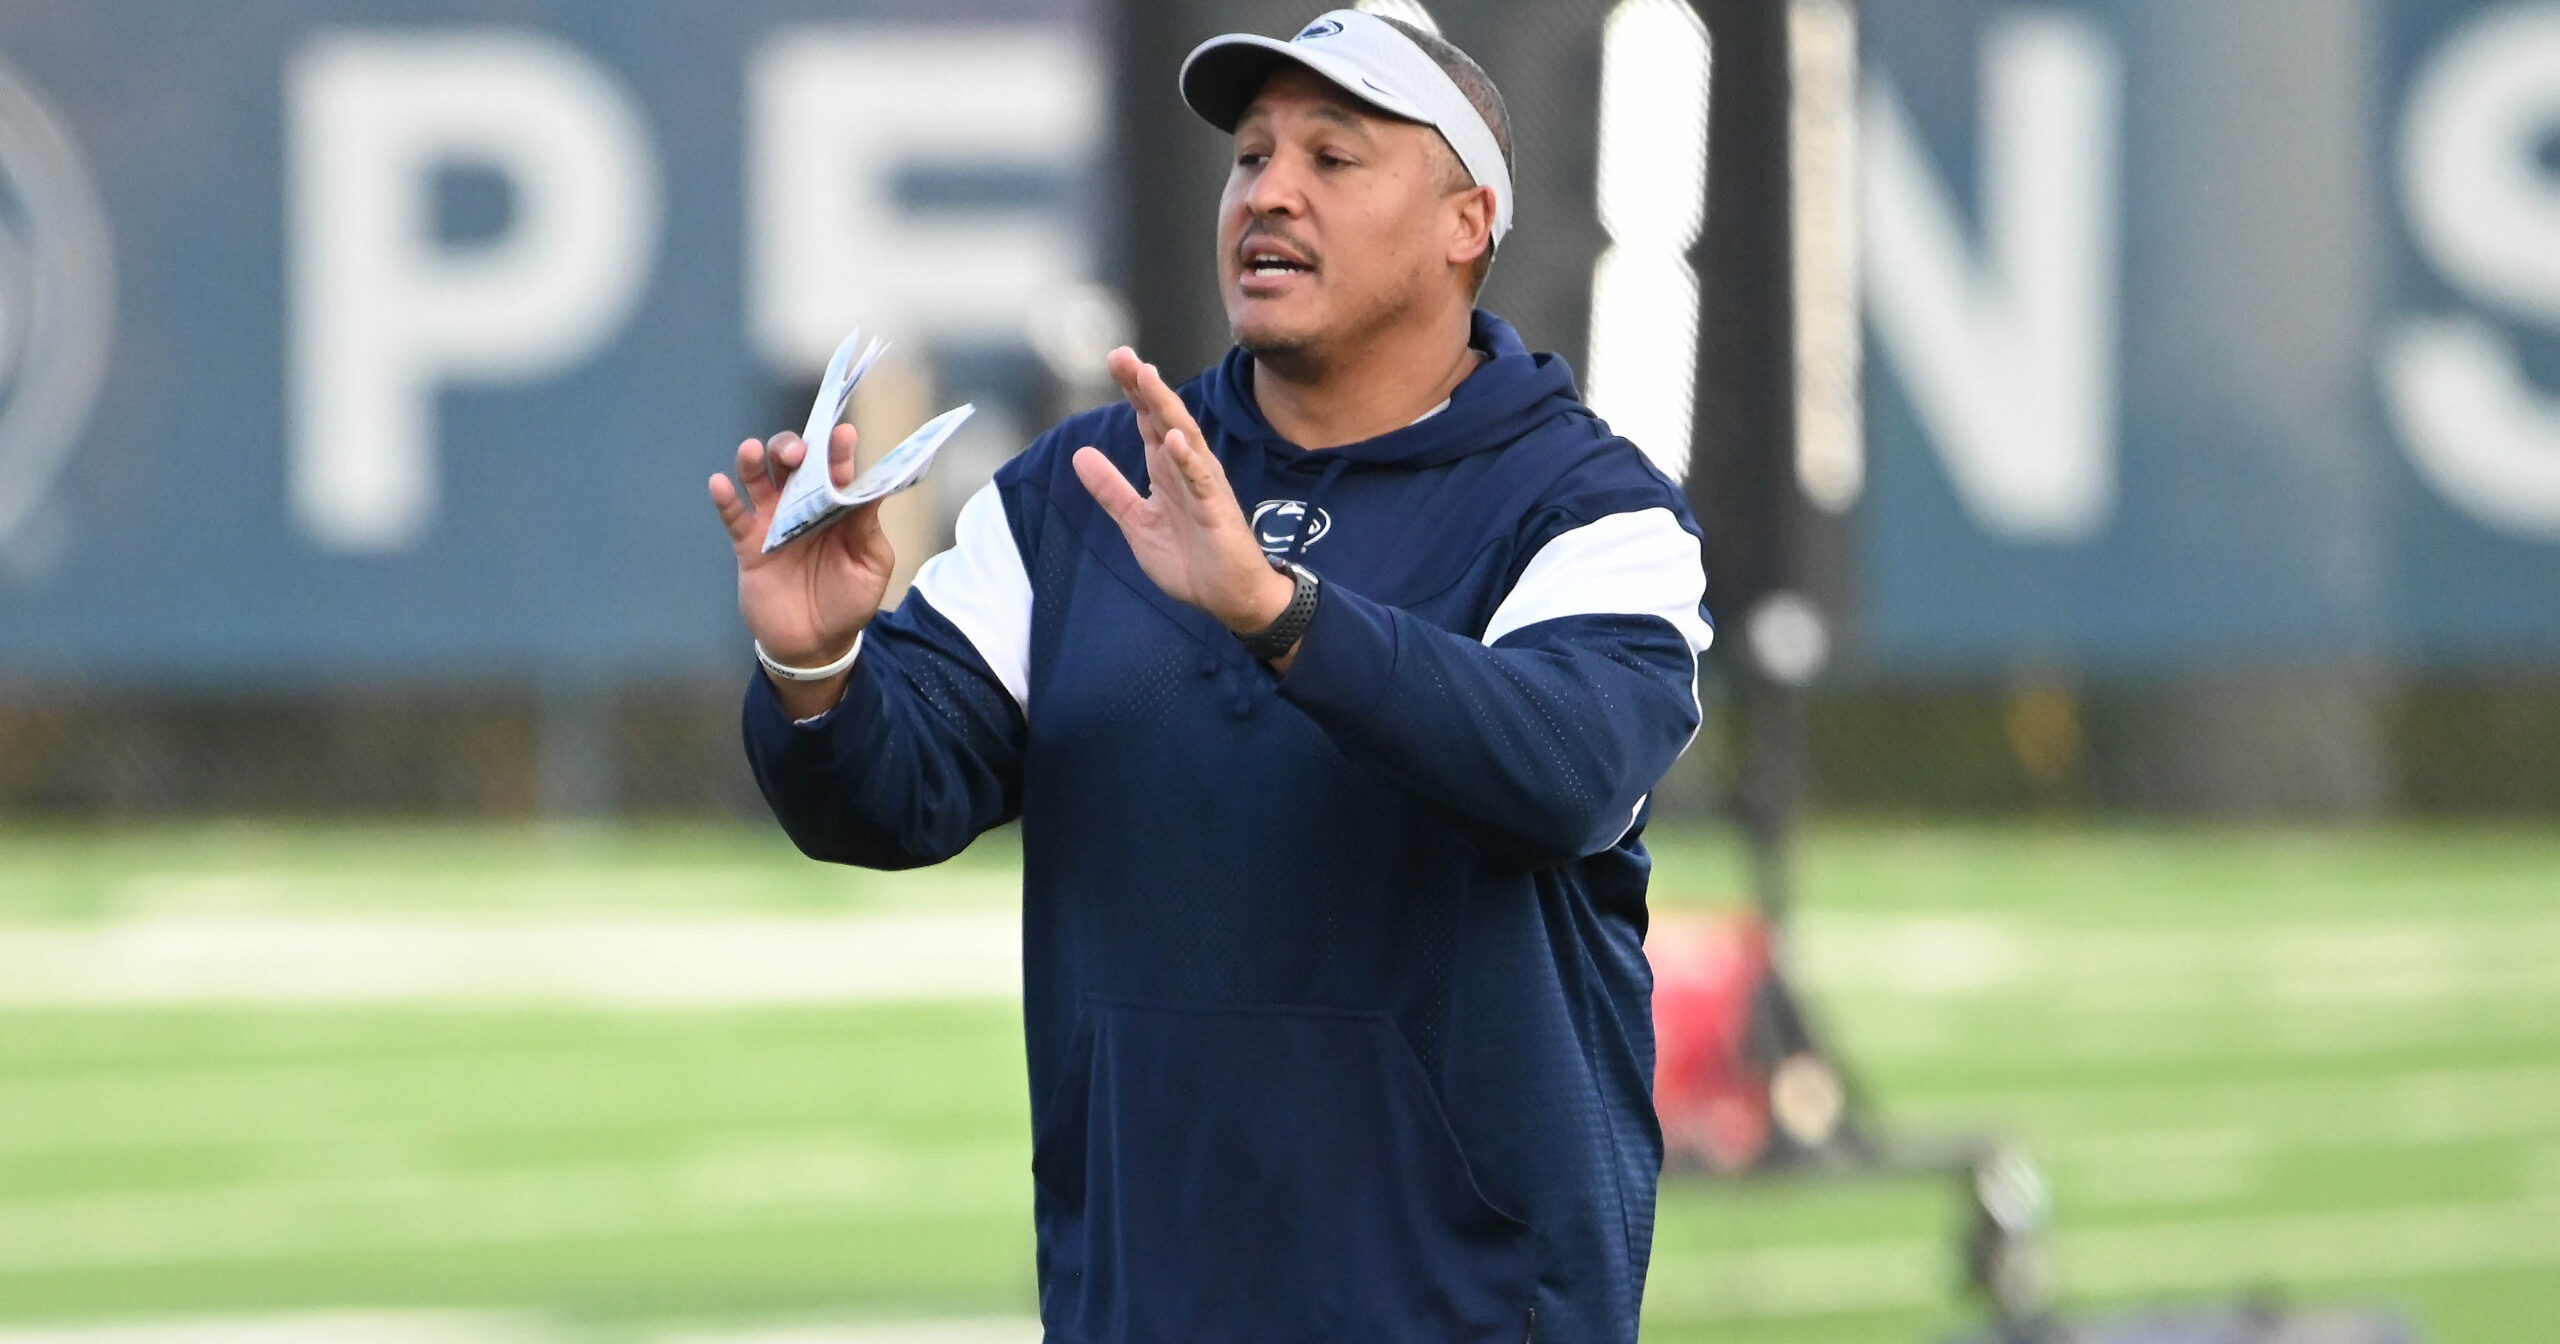 Penn State running backs coach Ja'Juan Seider